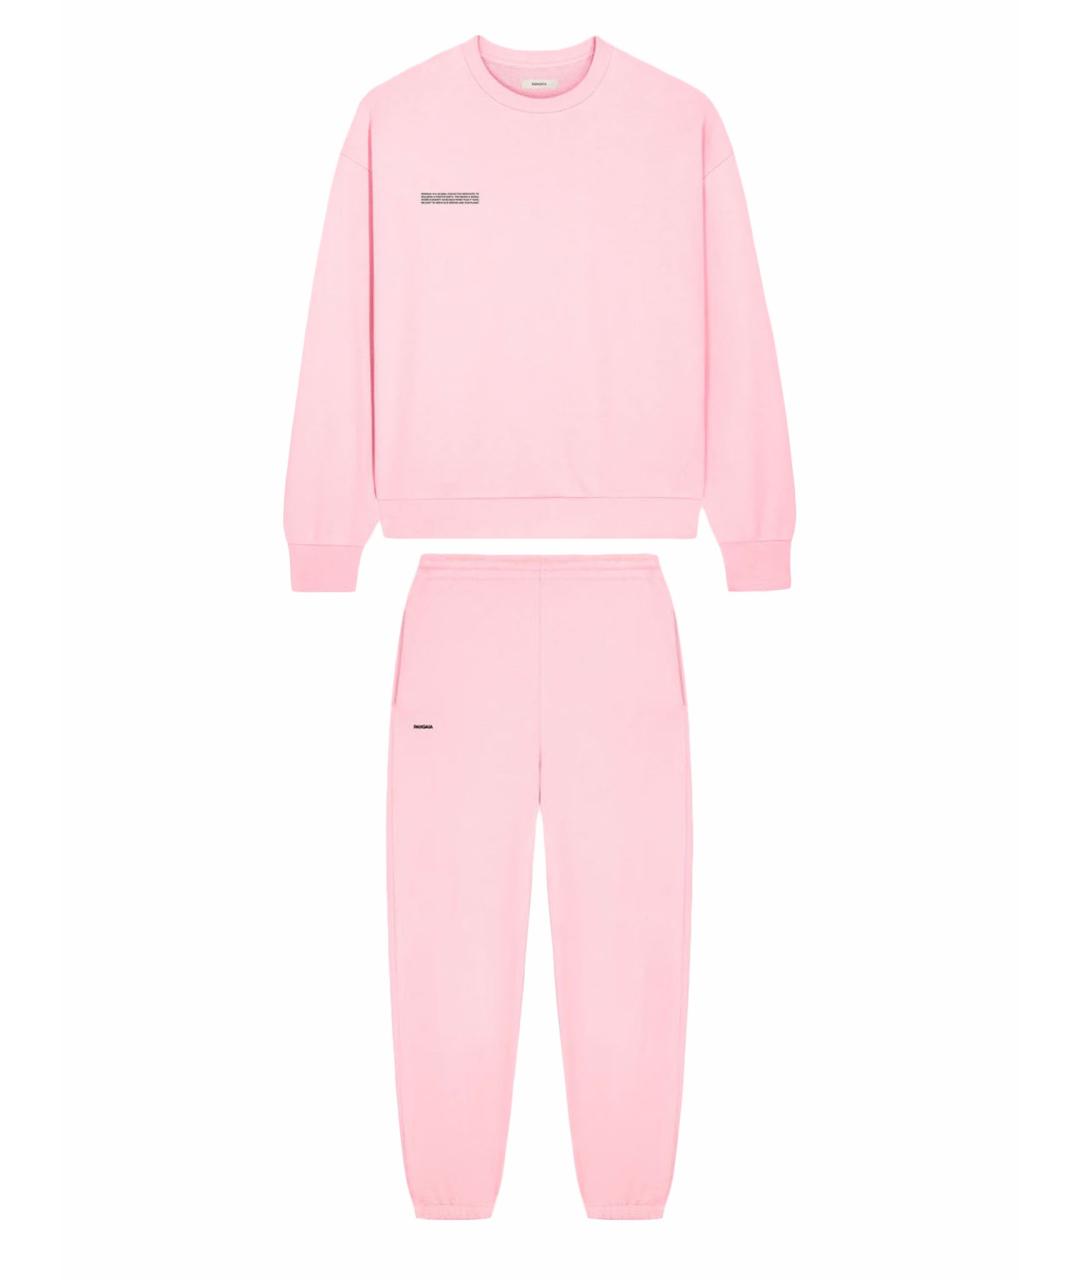 THE PANGAIA Розовый хлопковый спортивные костюмы, фото 1